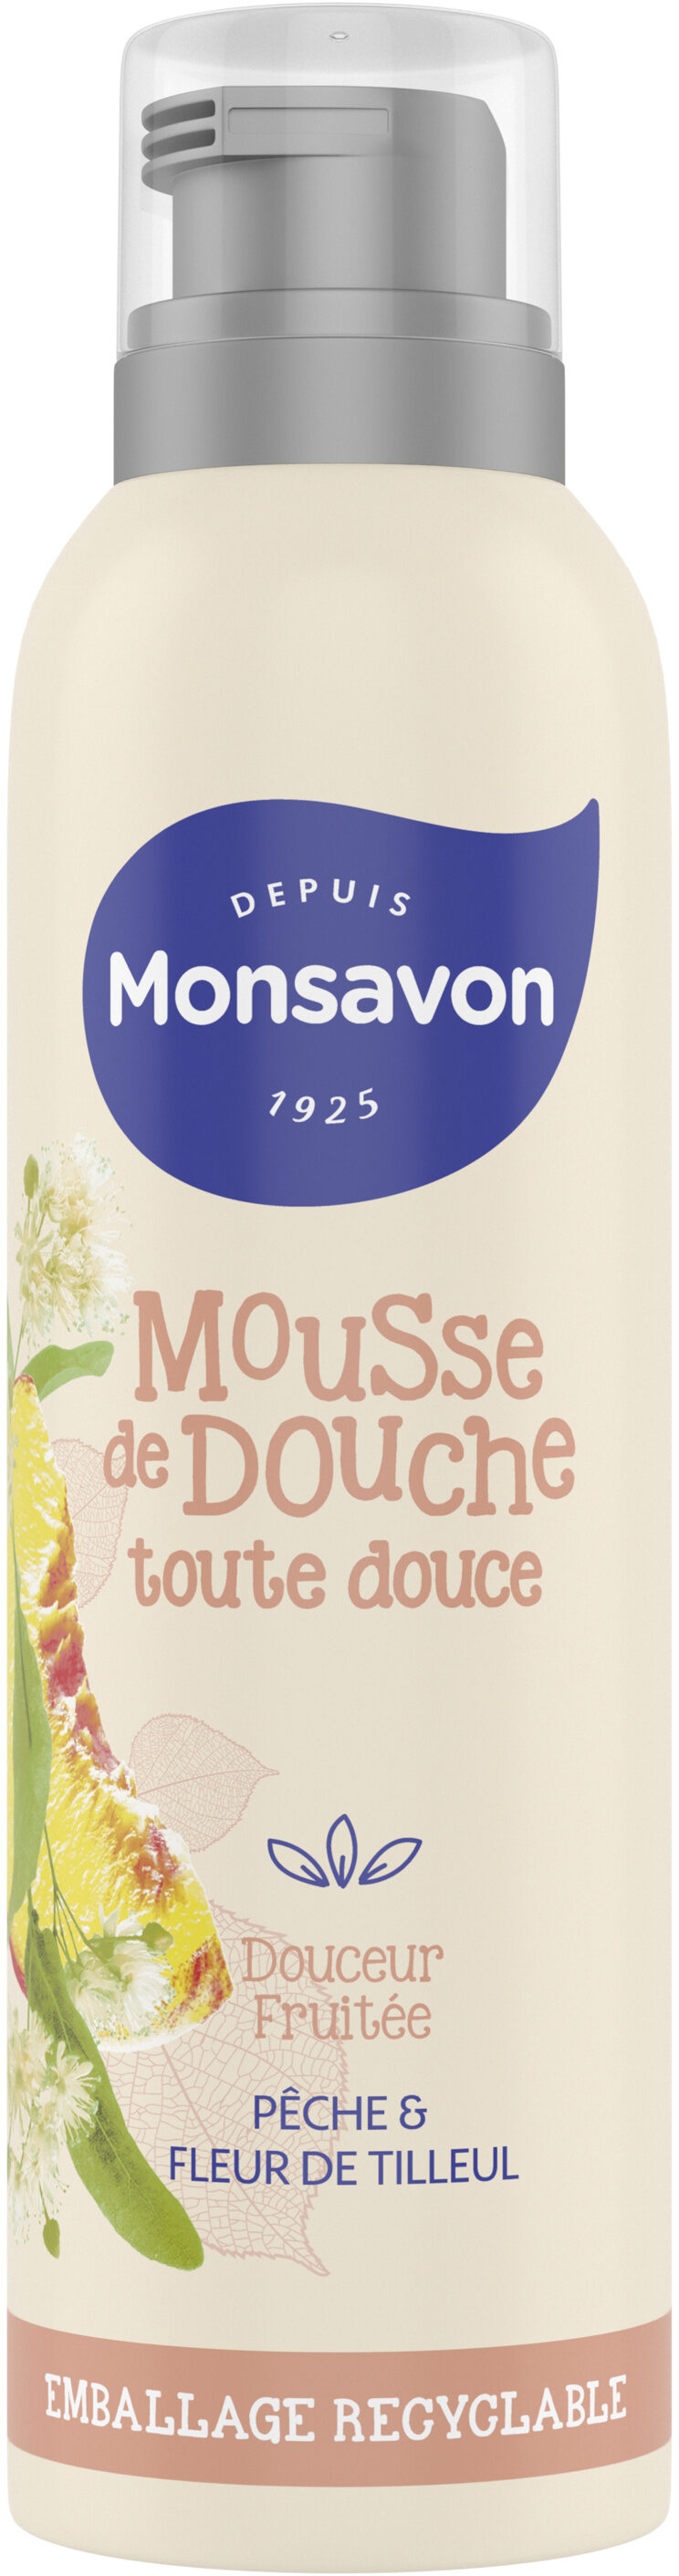 Monsavon Gel Douche Mousse Douceur Fruitée Pêche & Tilleul - Продукт - fr